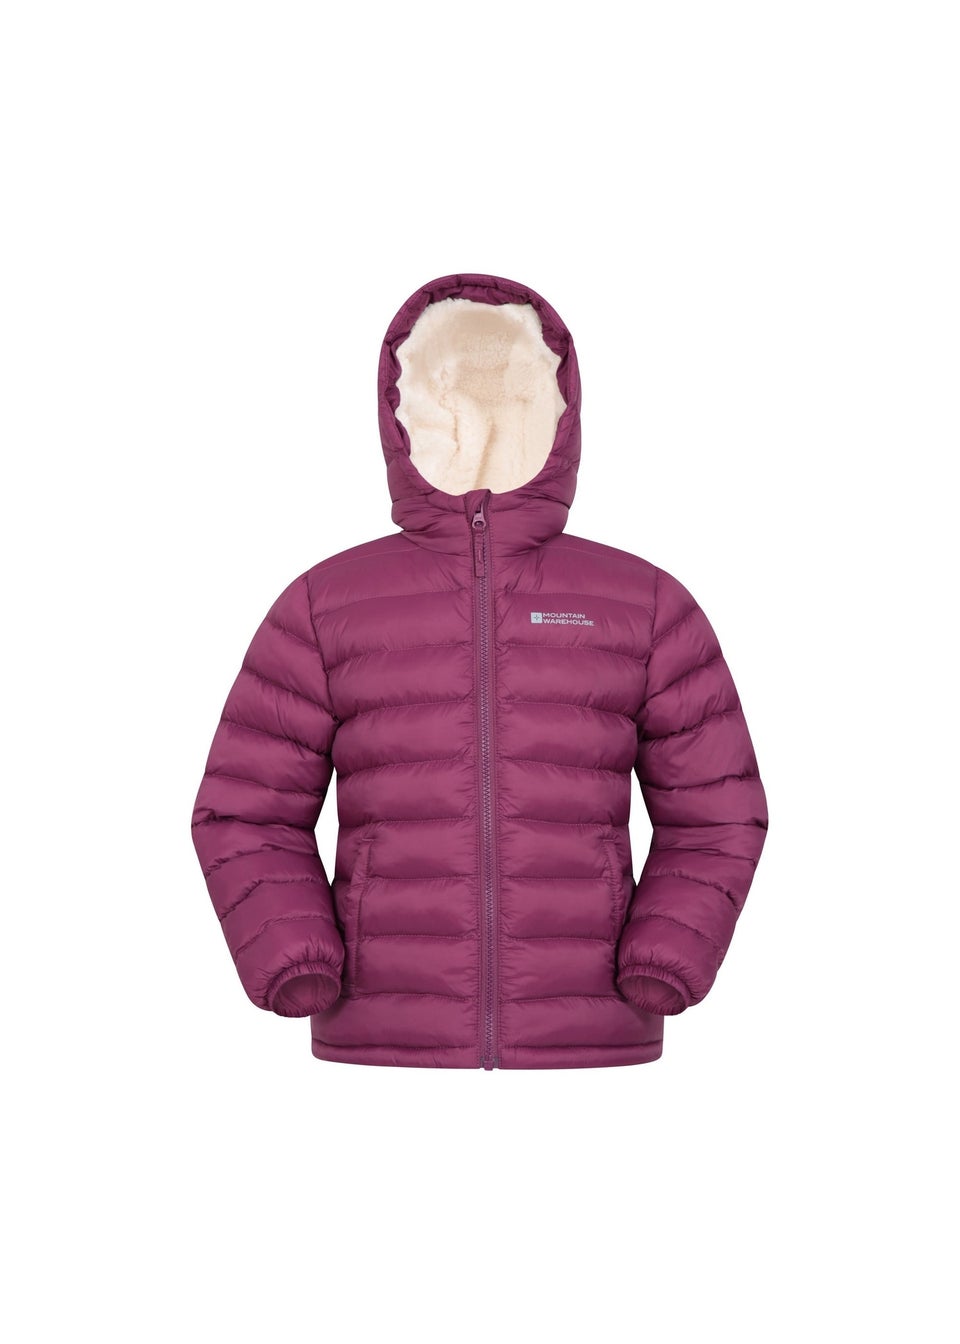 Seasons Fur-Lined Kids Padded Jacket